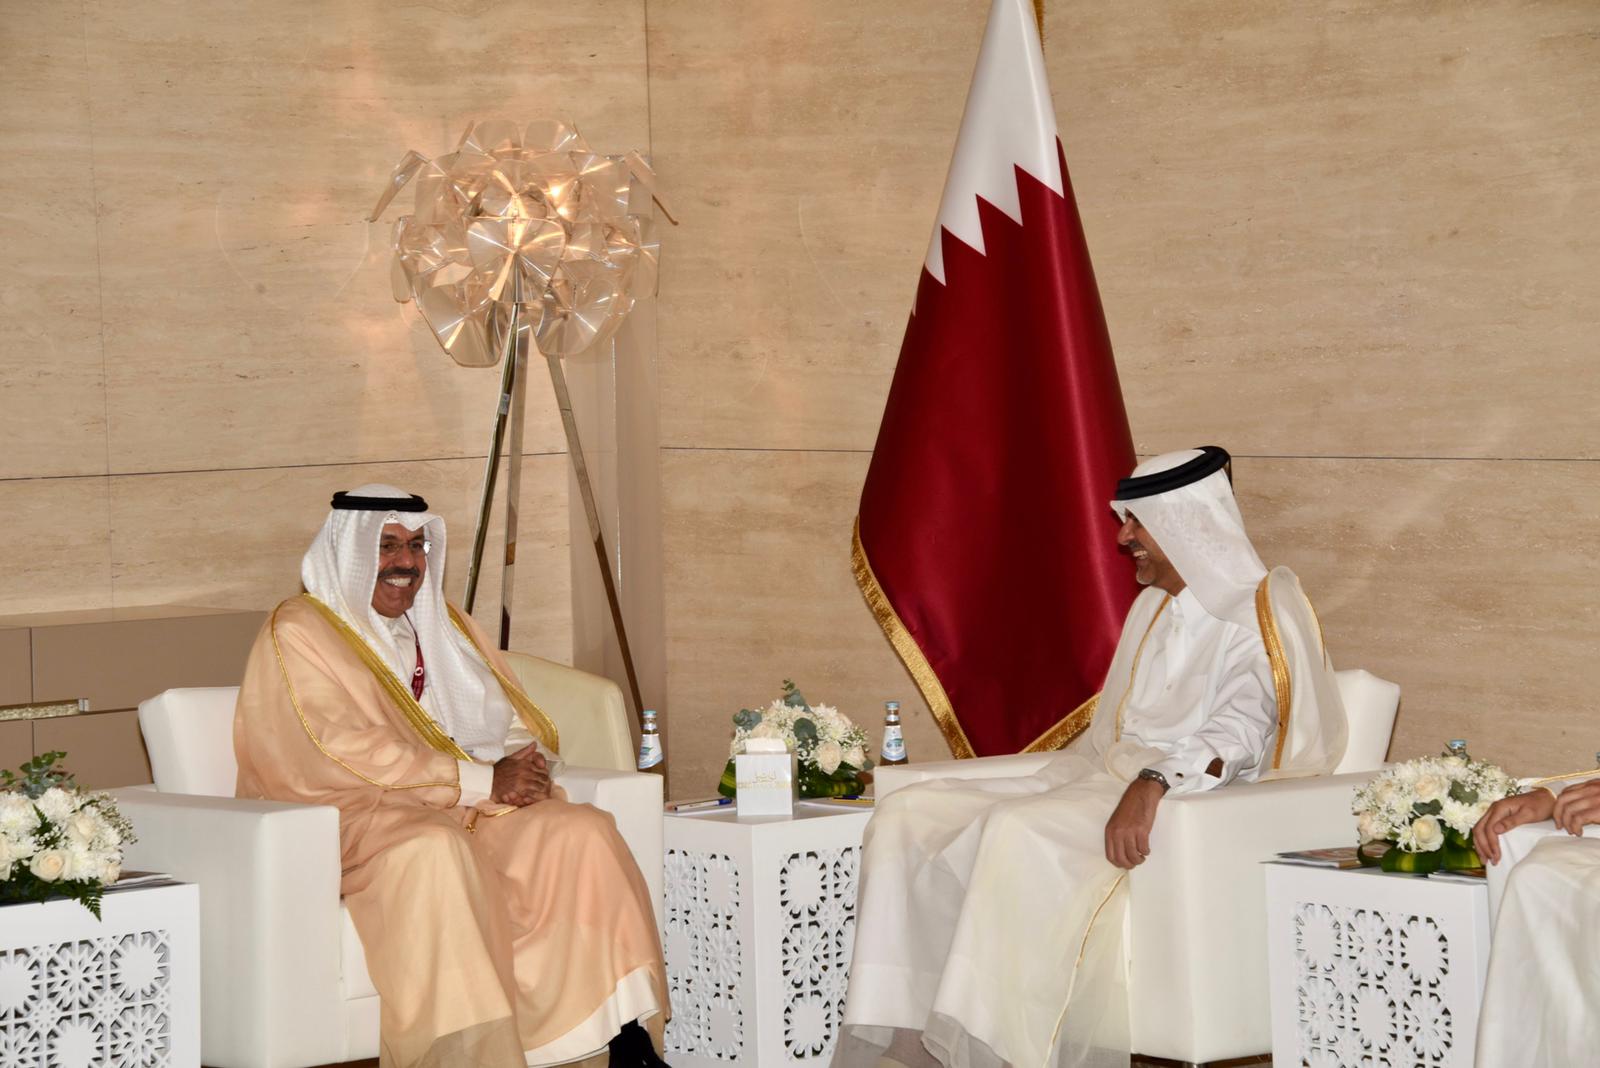 النواف بحث مع رئيس الوزراء القطري الملفات الأمنية ذات الاهتمام المشترك